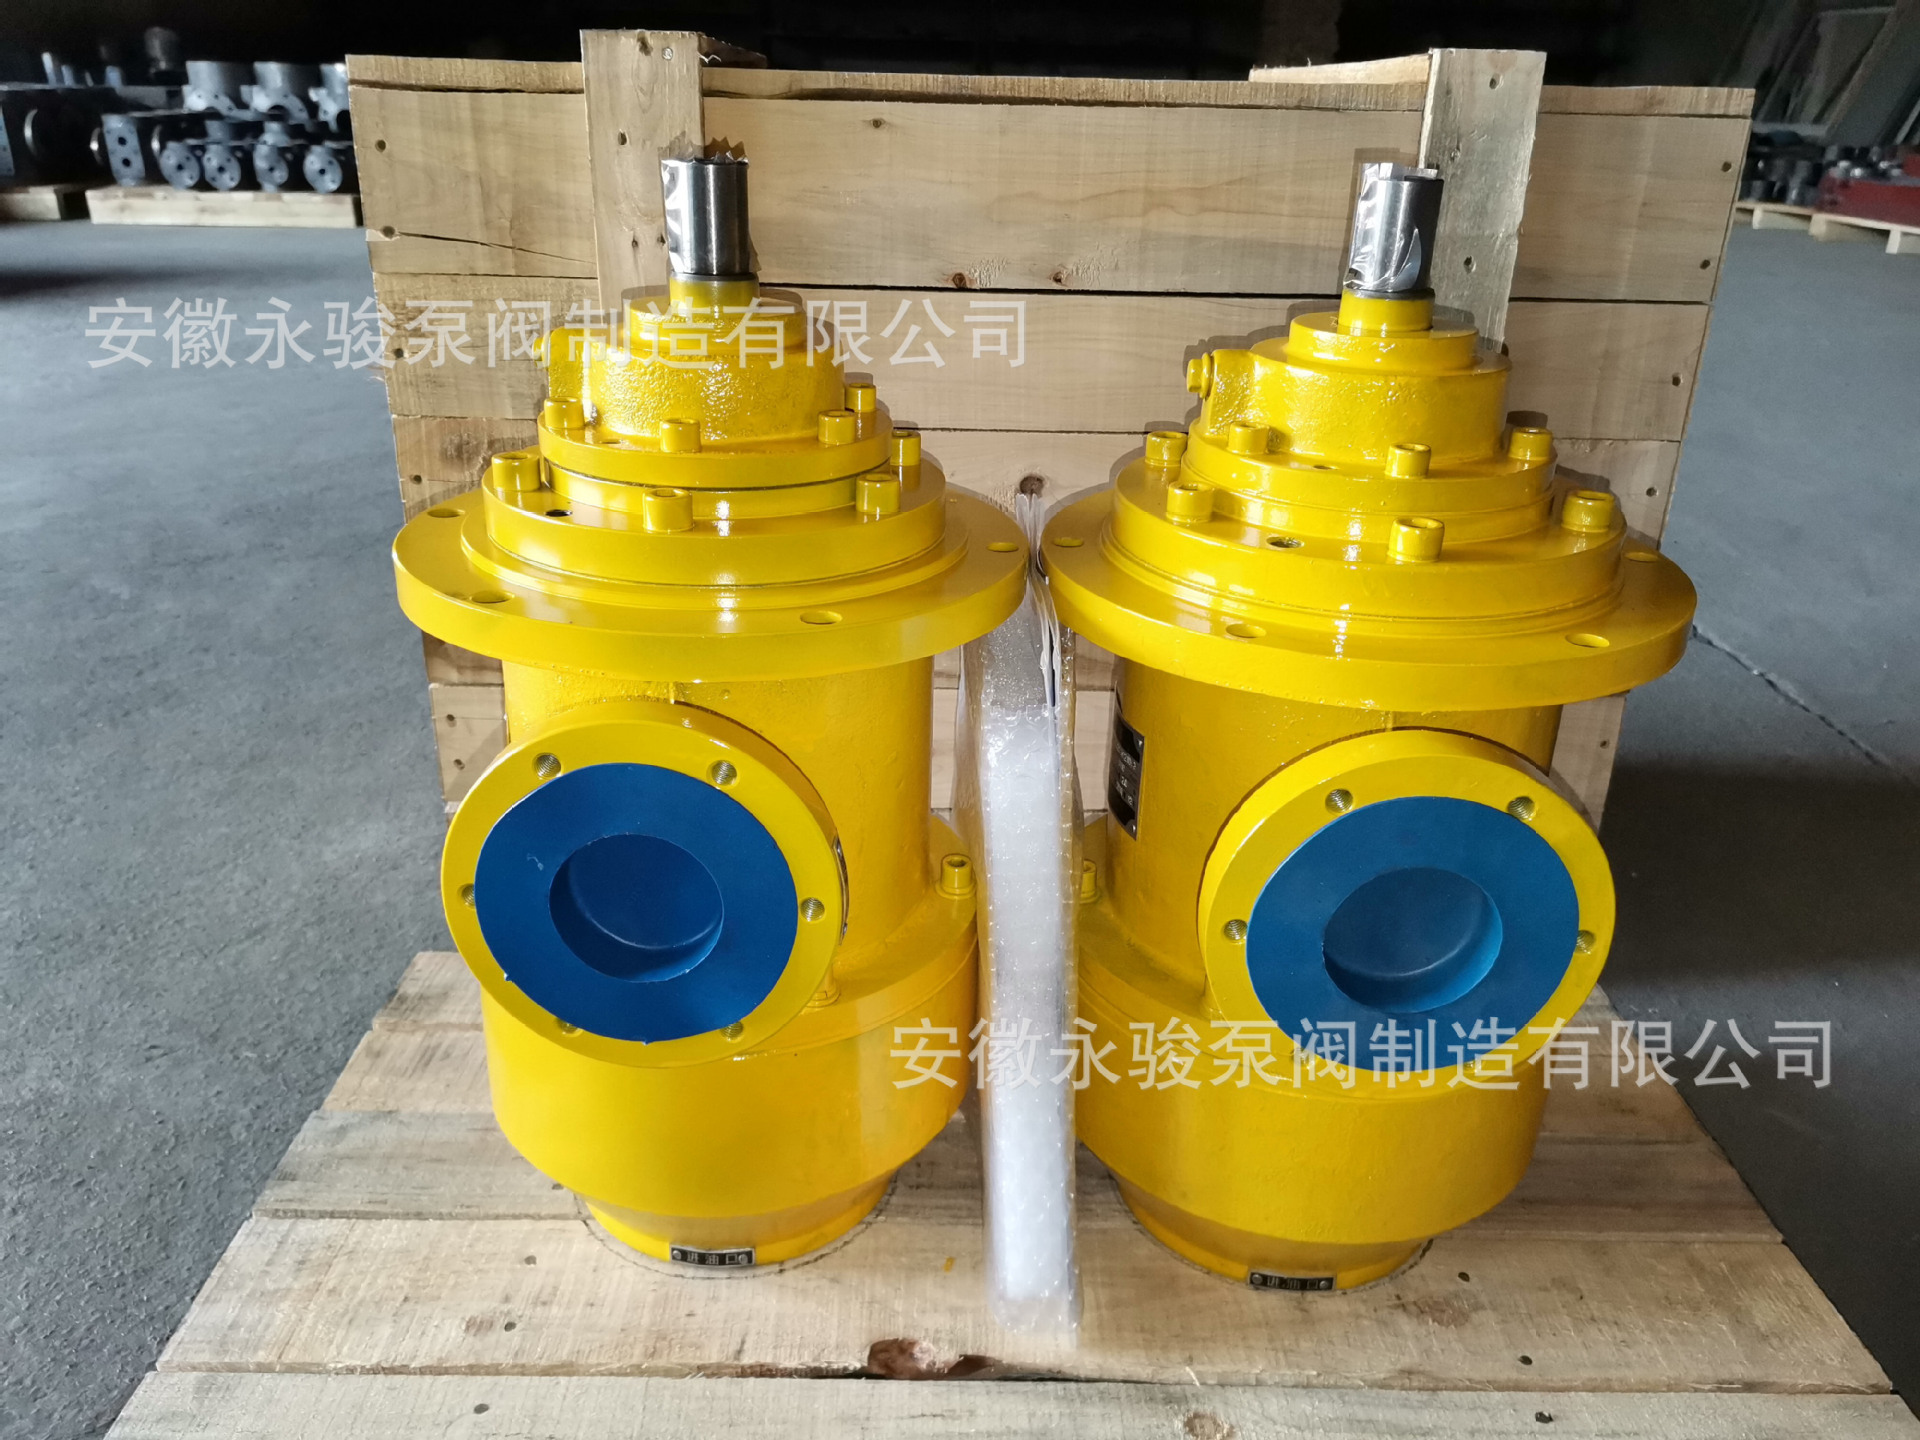 黄山螺杆泵 HSJ280-46 浸没式三螺杆泵 稀油站润滑油泵 安徽永骏